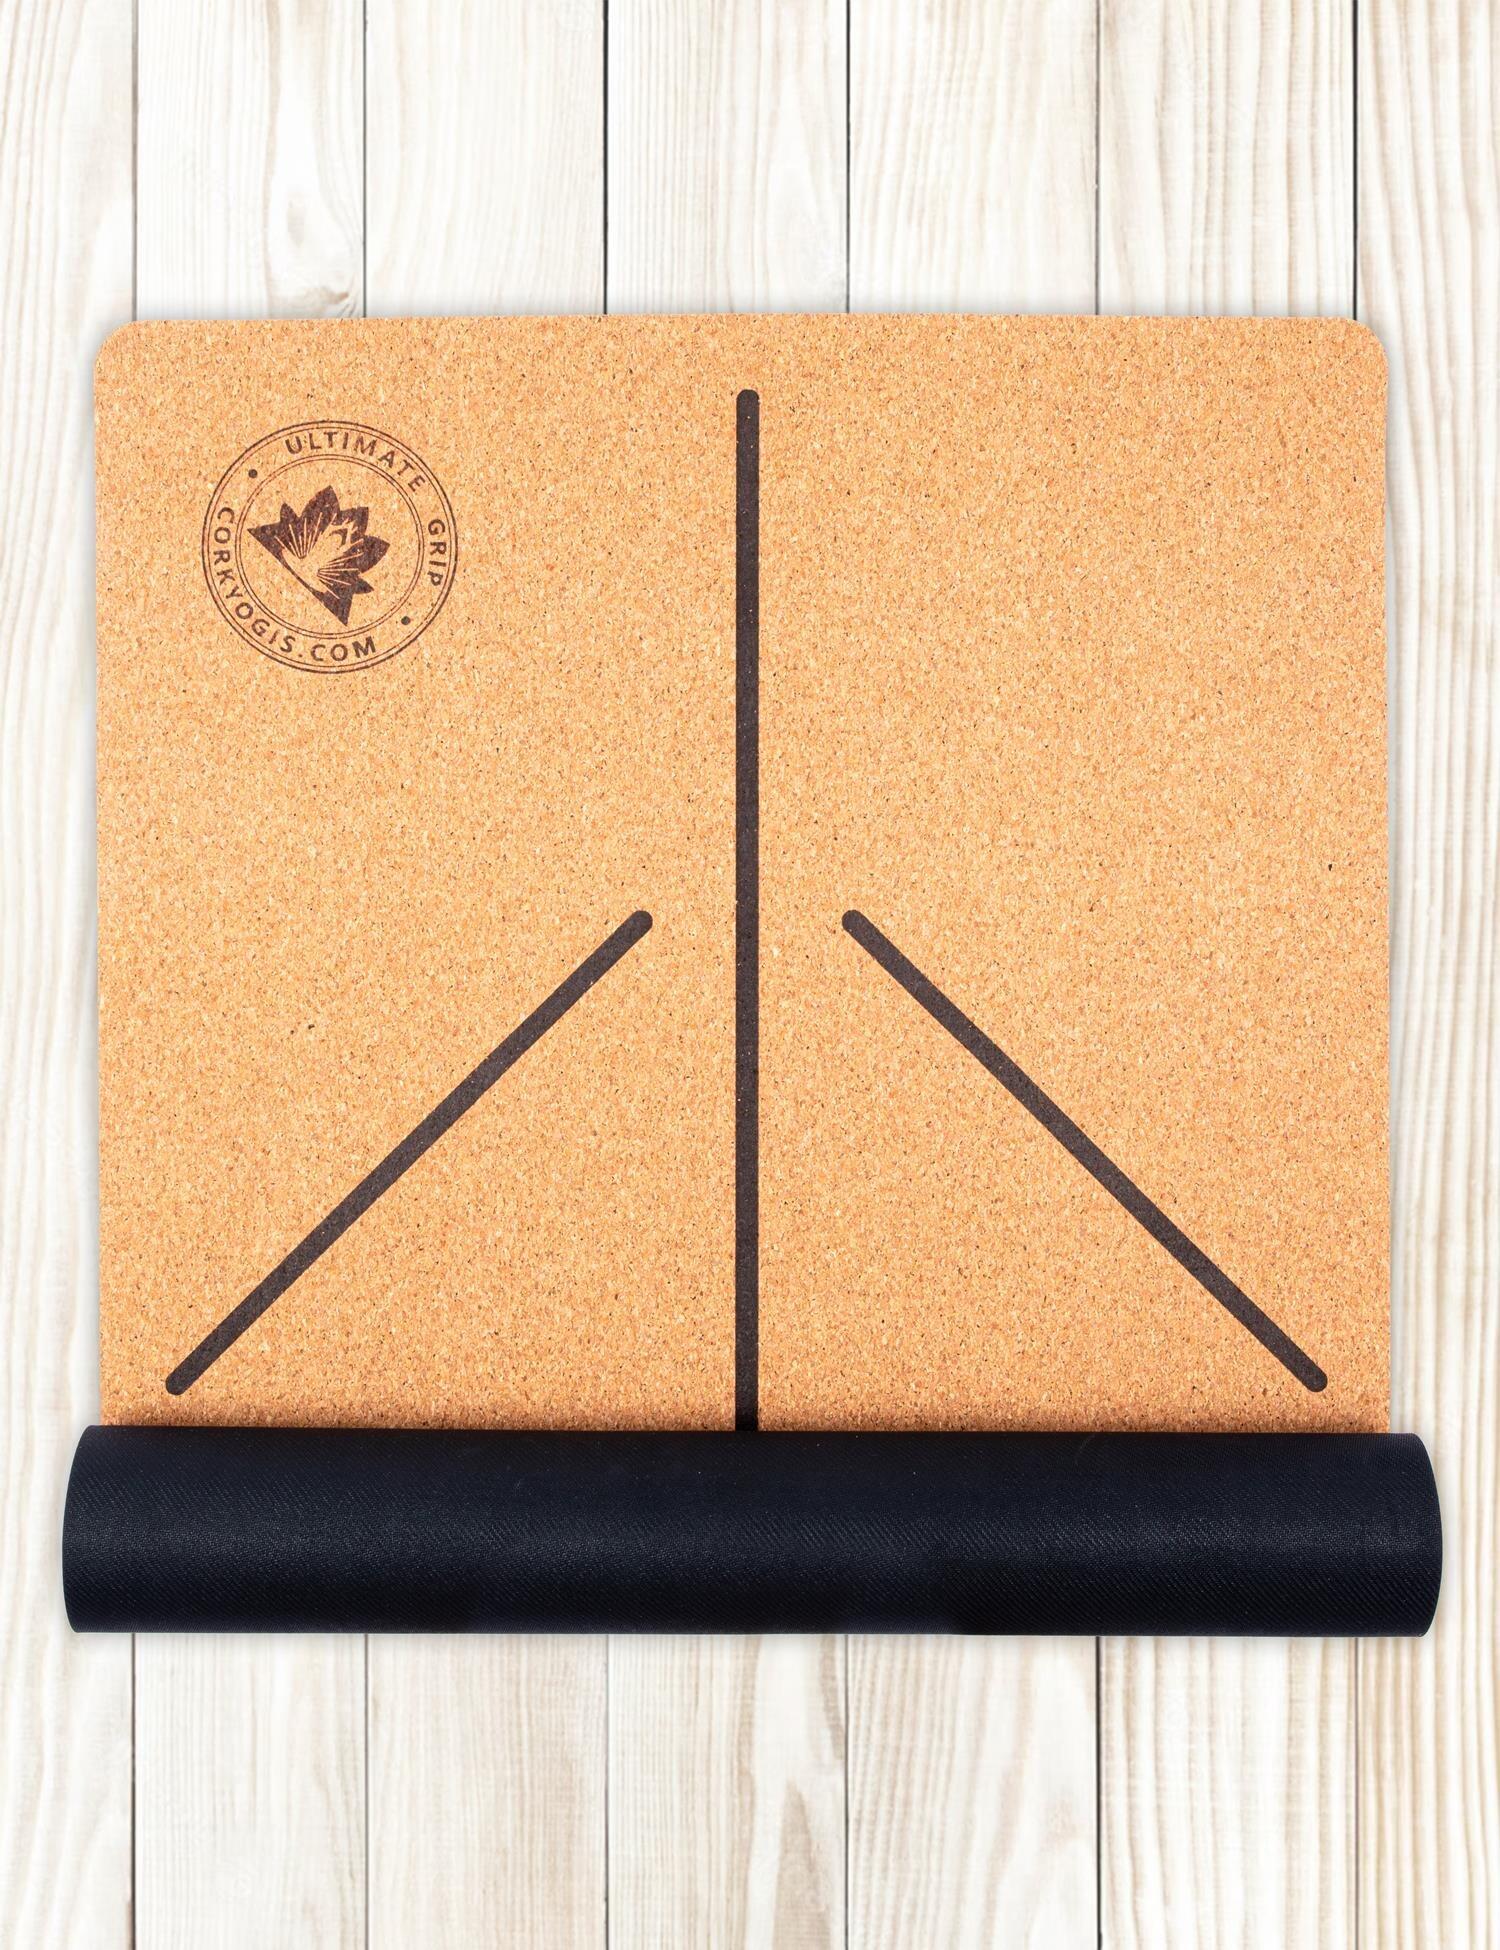 premium cork yoga mat with alignment lines